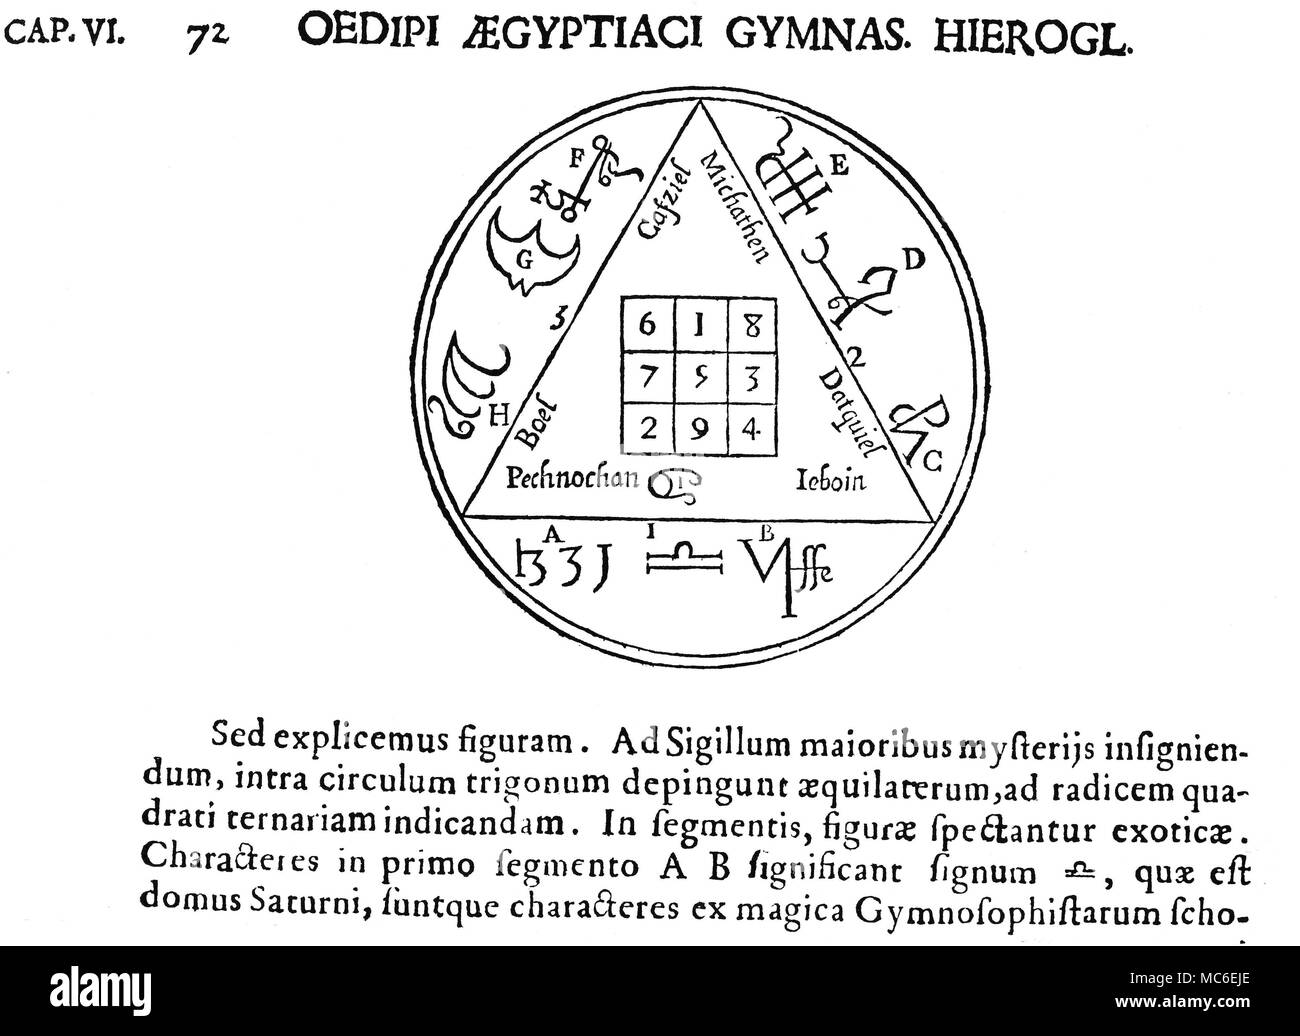 Symboles magiques - Carrés Magiques - SATURNE La table de Saturni, ou carré magique de Saturne, sur la base d'un carré 3 x 3, le seul ajout de linéaire qui est de 15, dans n'importe quelle direction. La place est entourée de divers noms et cachets des anges et démons liés à Saturne. D'Athanasius Kircher, Œdipus Ægyptiacus, 1652-4. La structure, et certains de l'ange lore, est dérivé de la Carrés Magiques publié par Cornelius Agrippa. Banque D'Images